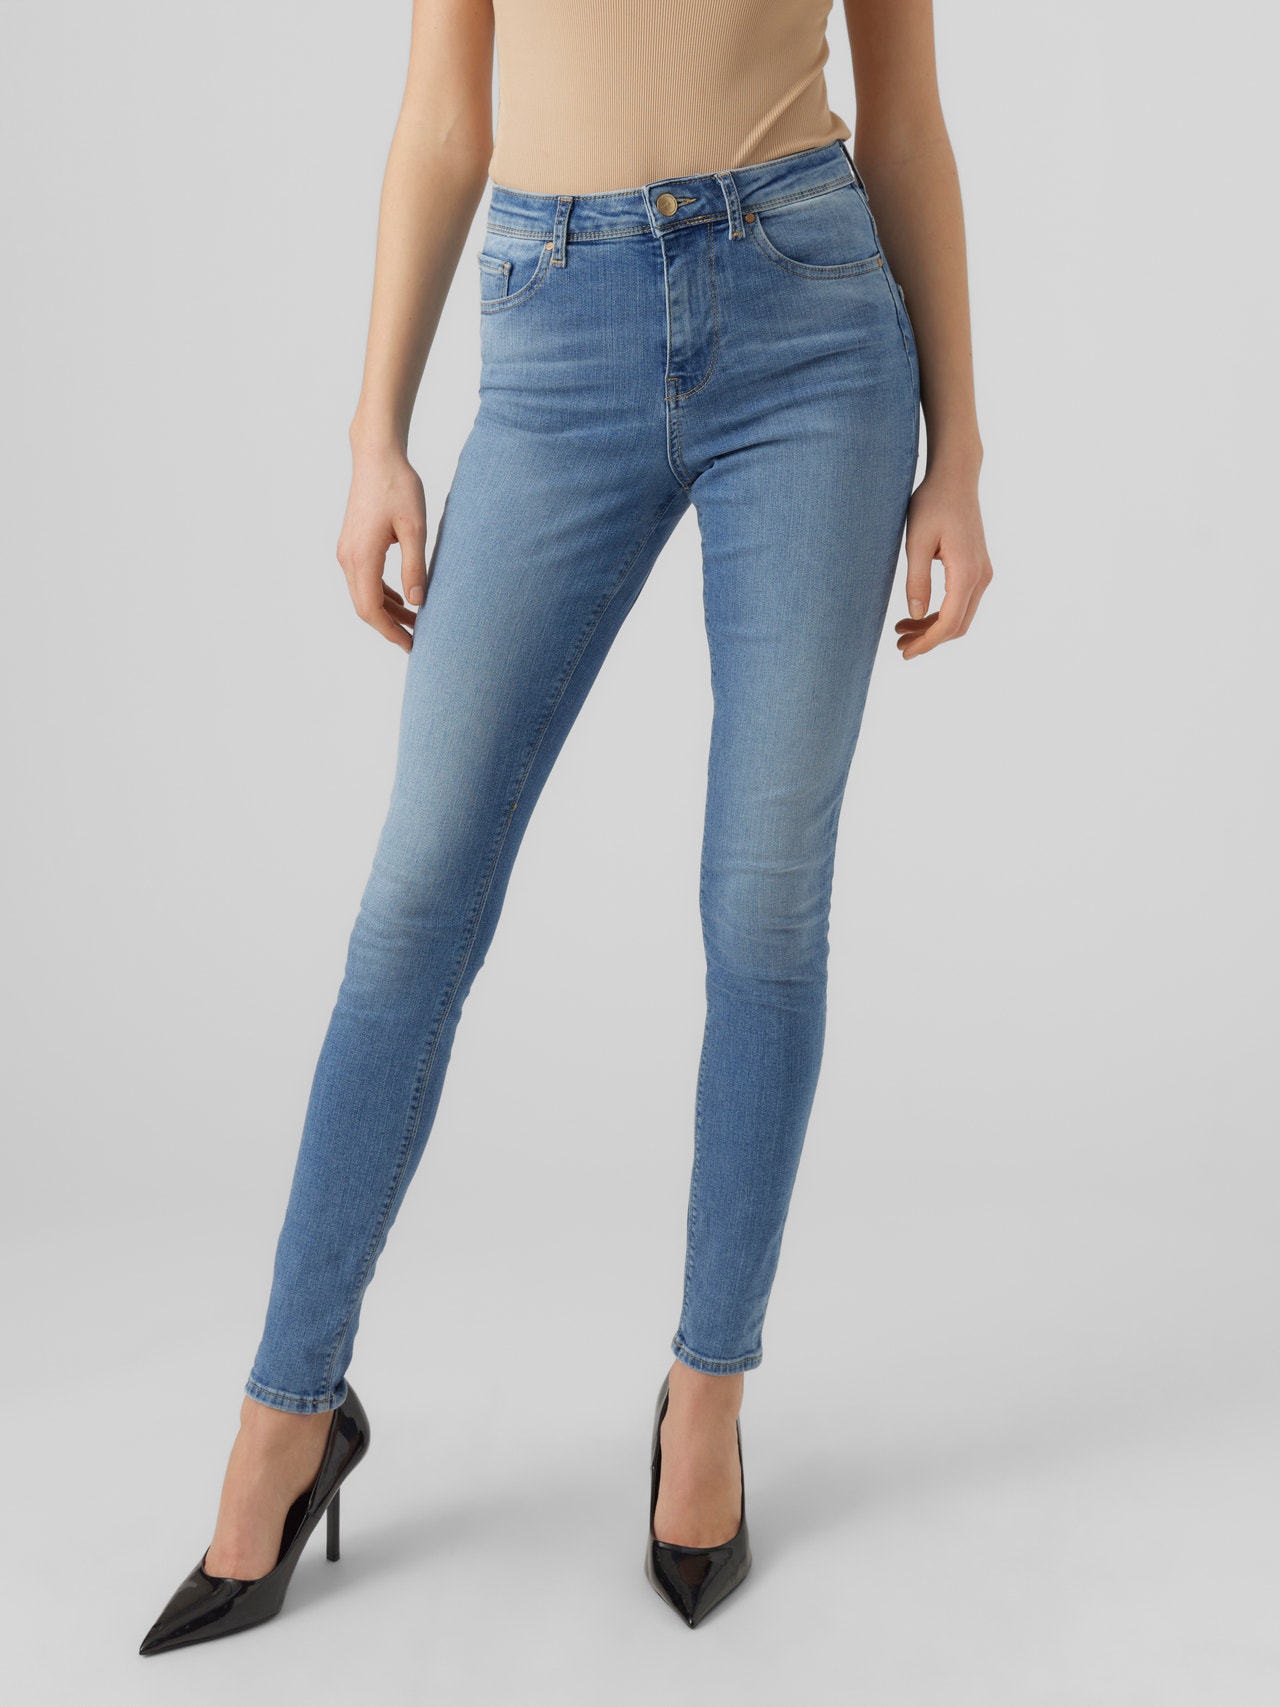 ijsje gebied vergelijking VMSOPHIA Slim Fit Jeans with 40% discount! | Vero Moda®